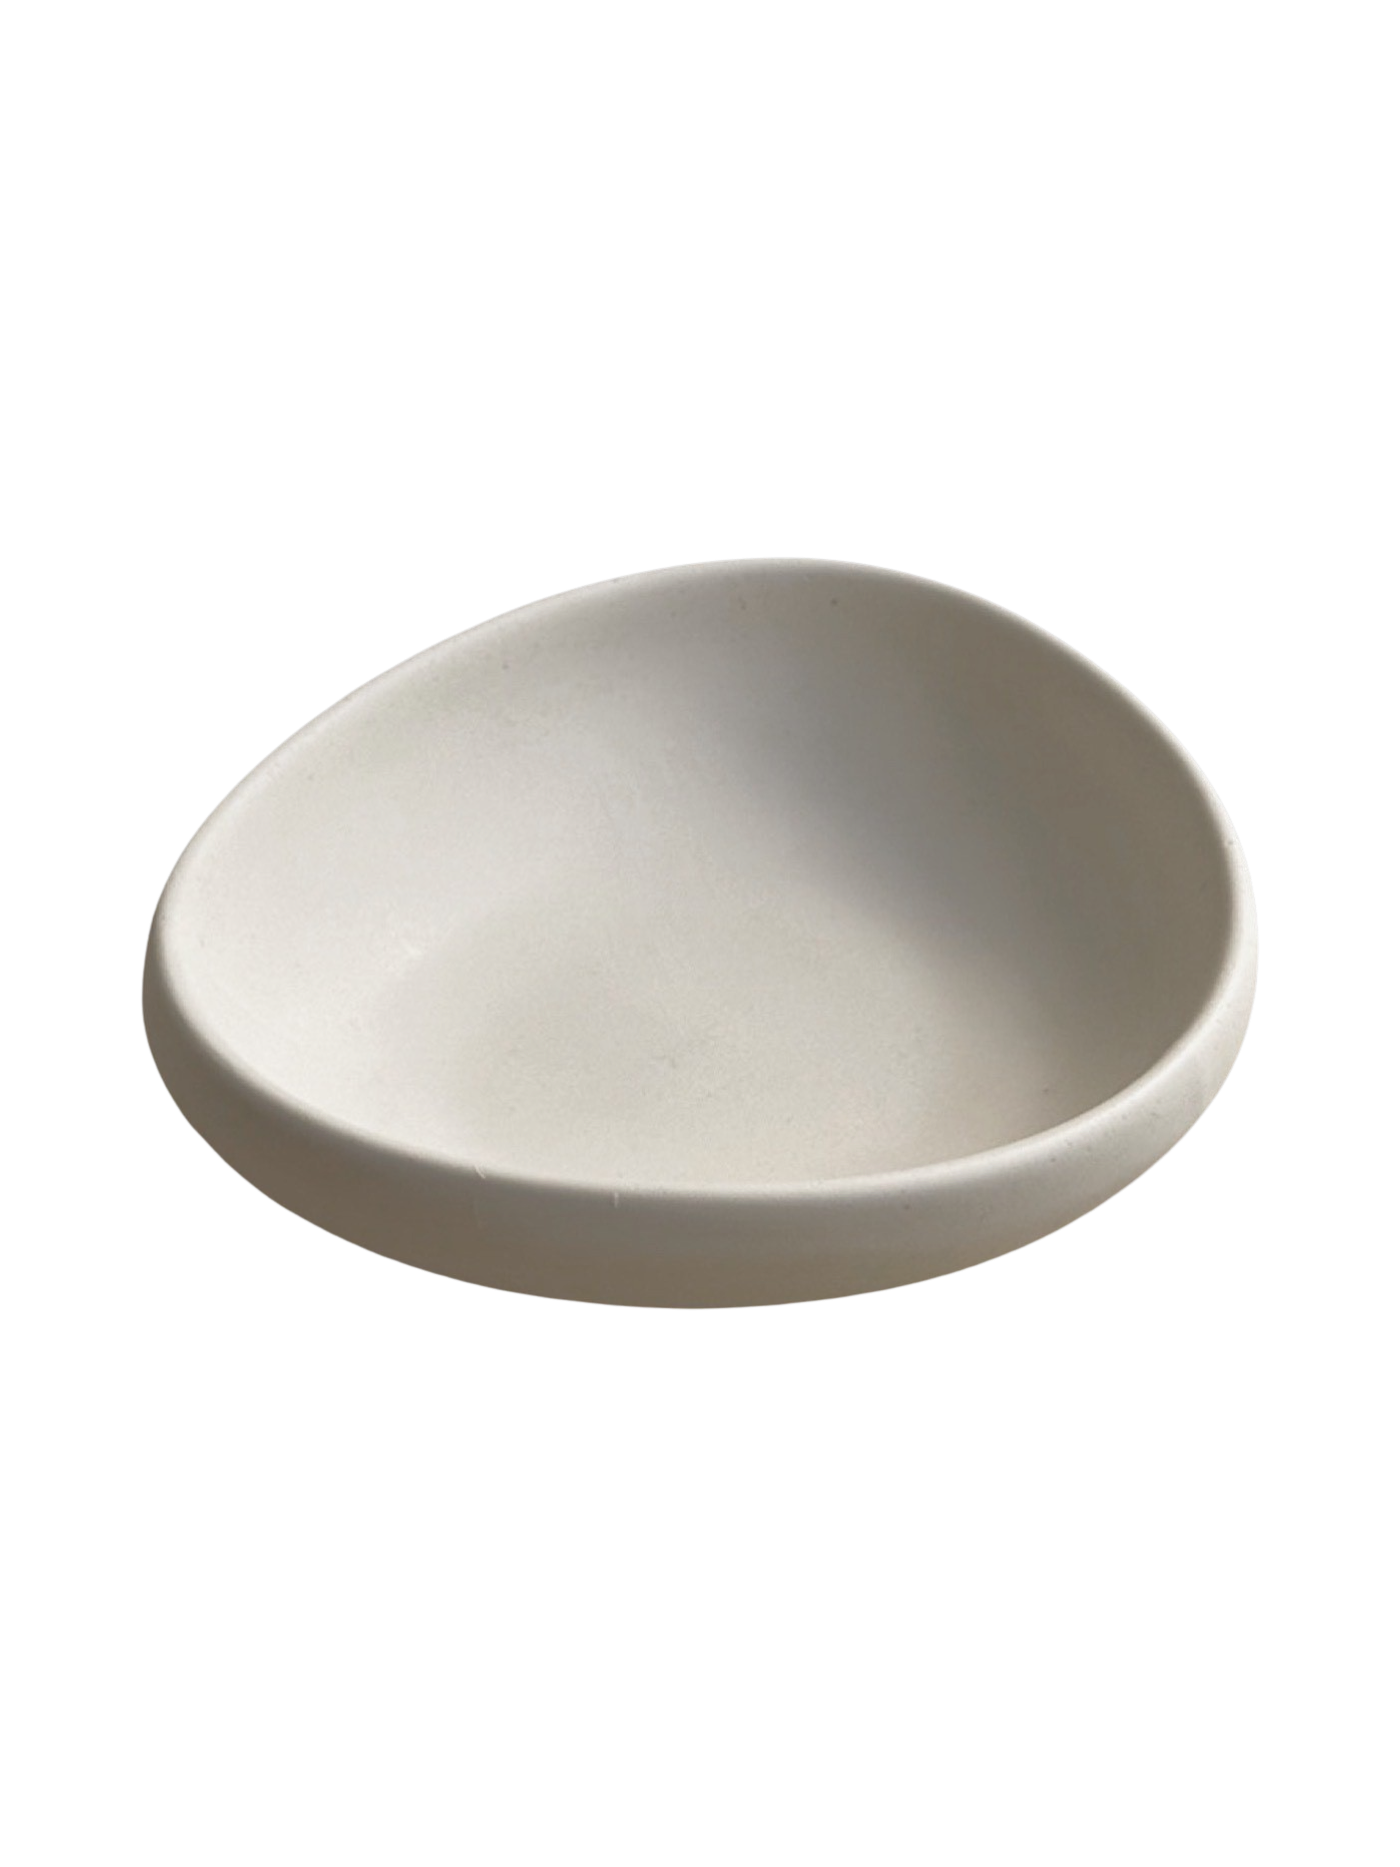 The Mini Arlo Dish